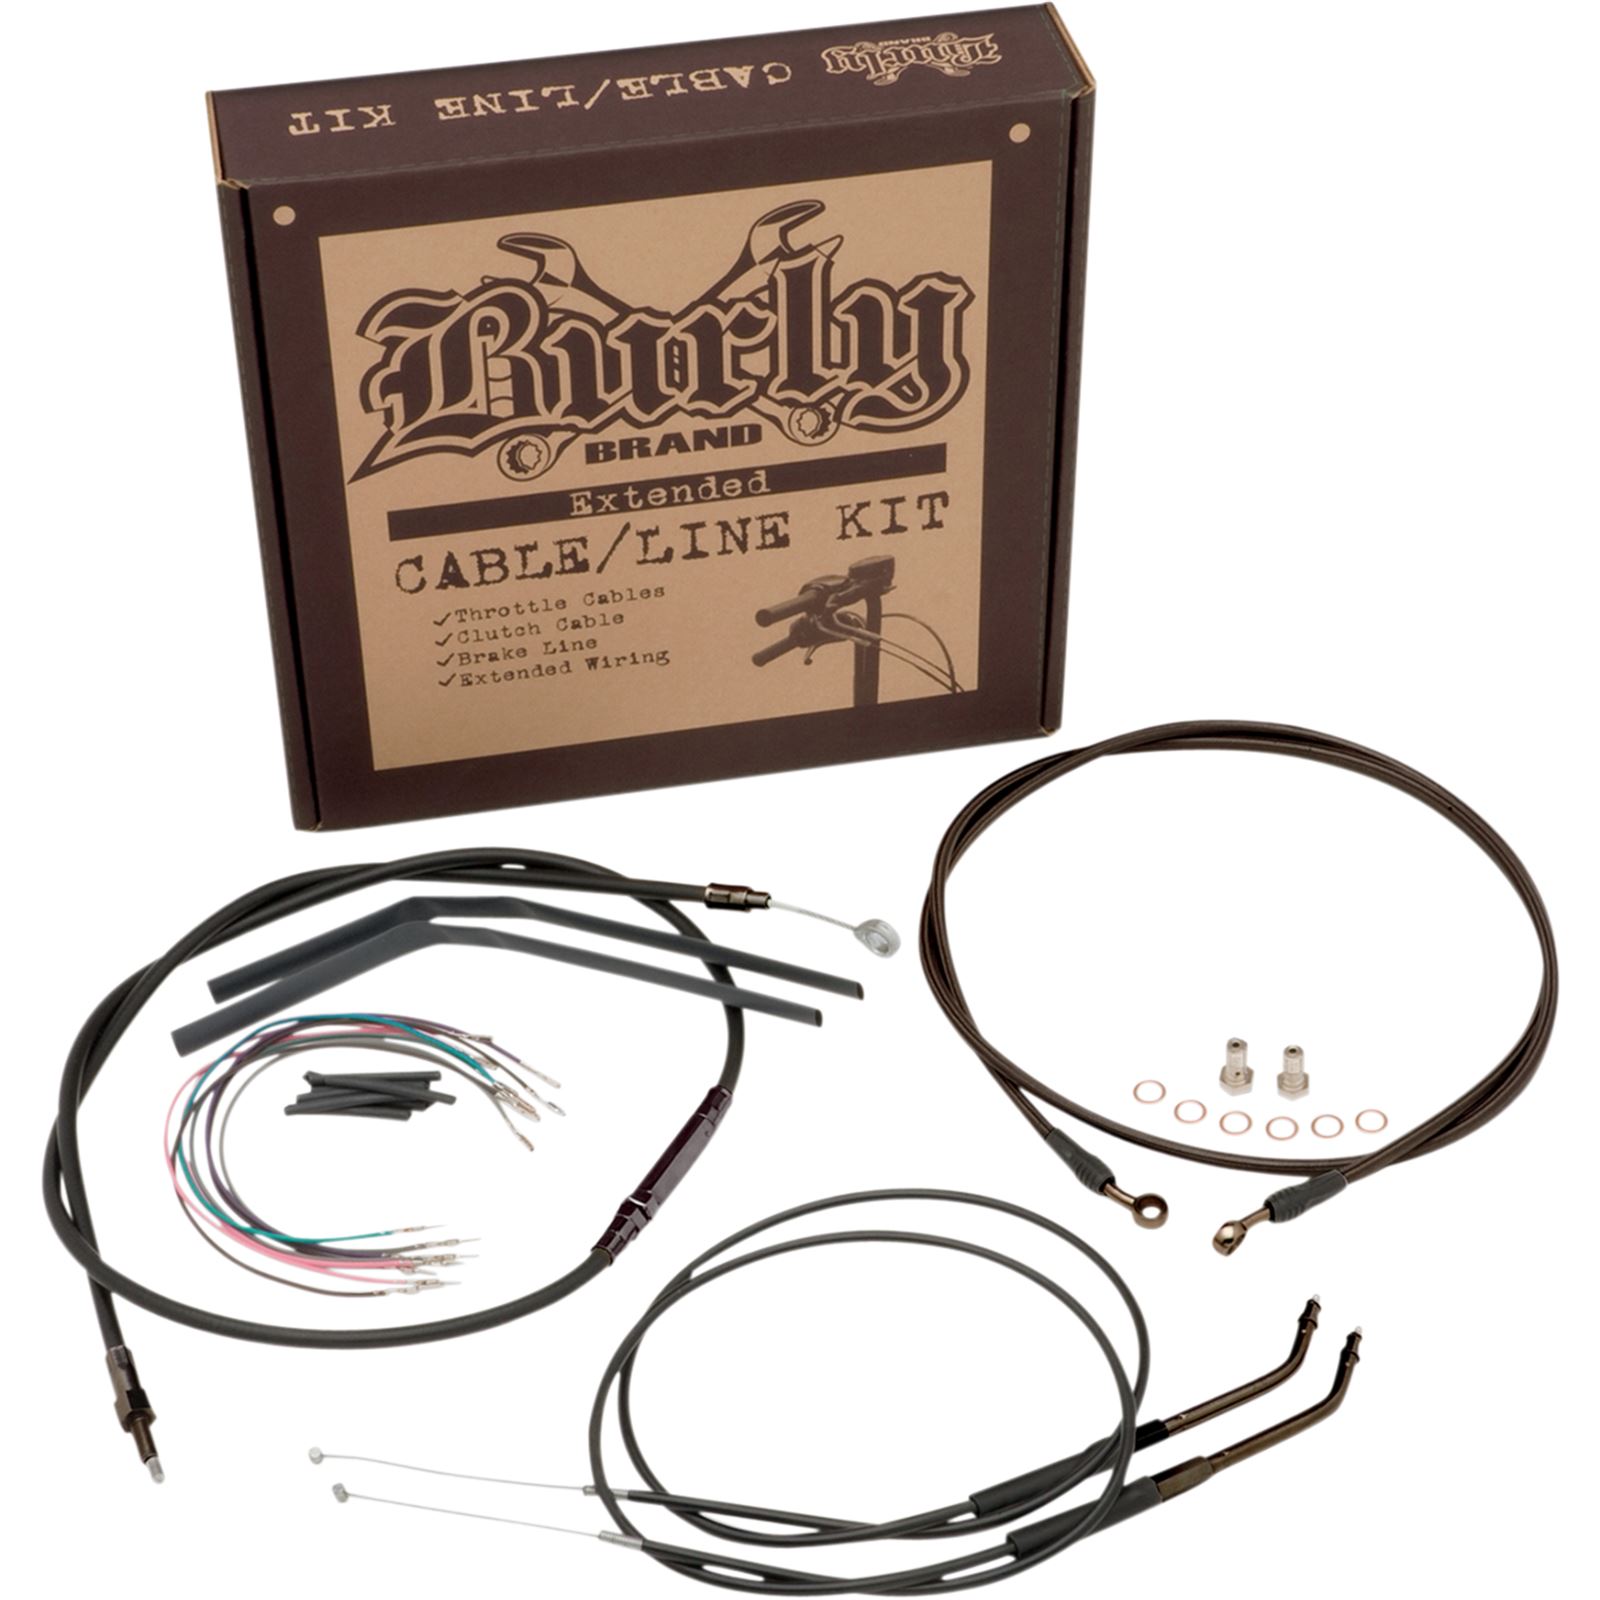 Burly Brand Complete Black Vinyl Handlebar Cable/Brake Line Kit For 12" Ape Hanger Handlebars